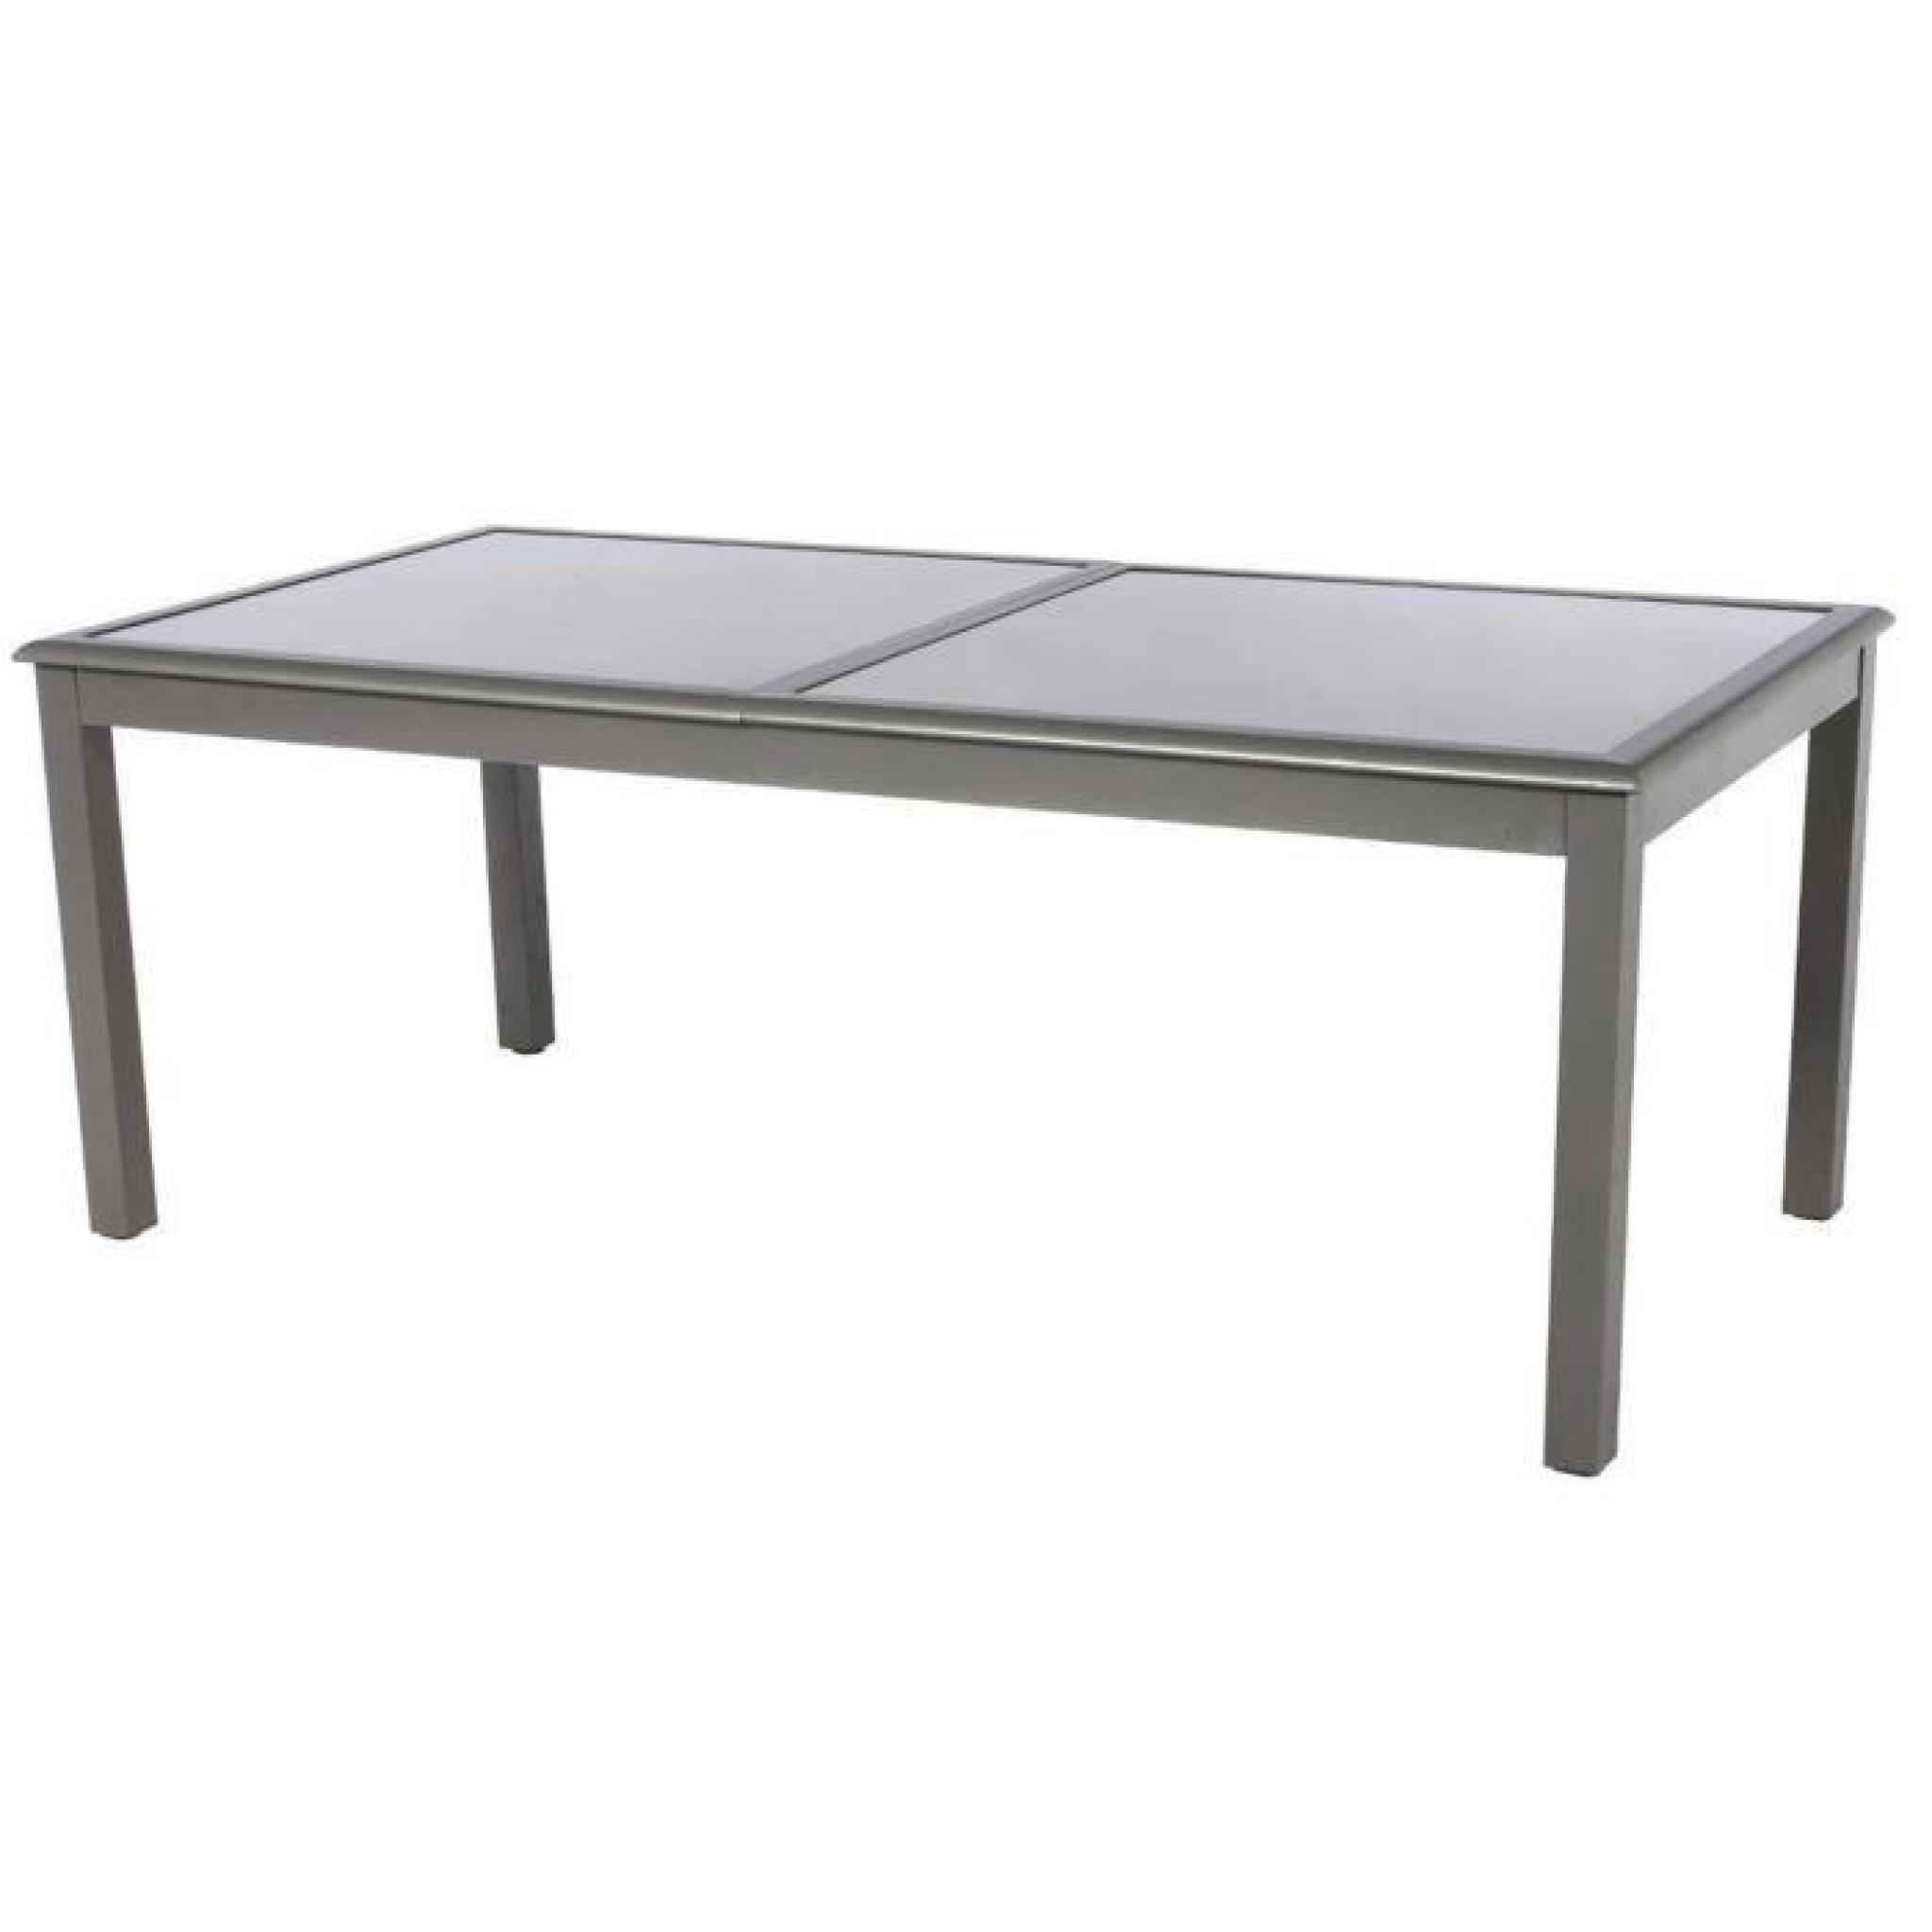 Table extensible rectangulaire en aluminium coloris taupe mastic - Dim : L 300/200 x P 100 x H 75cm  pas cher